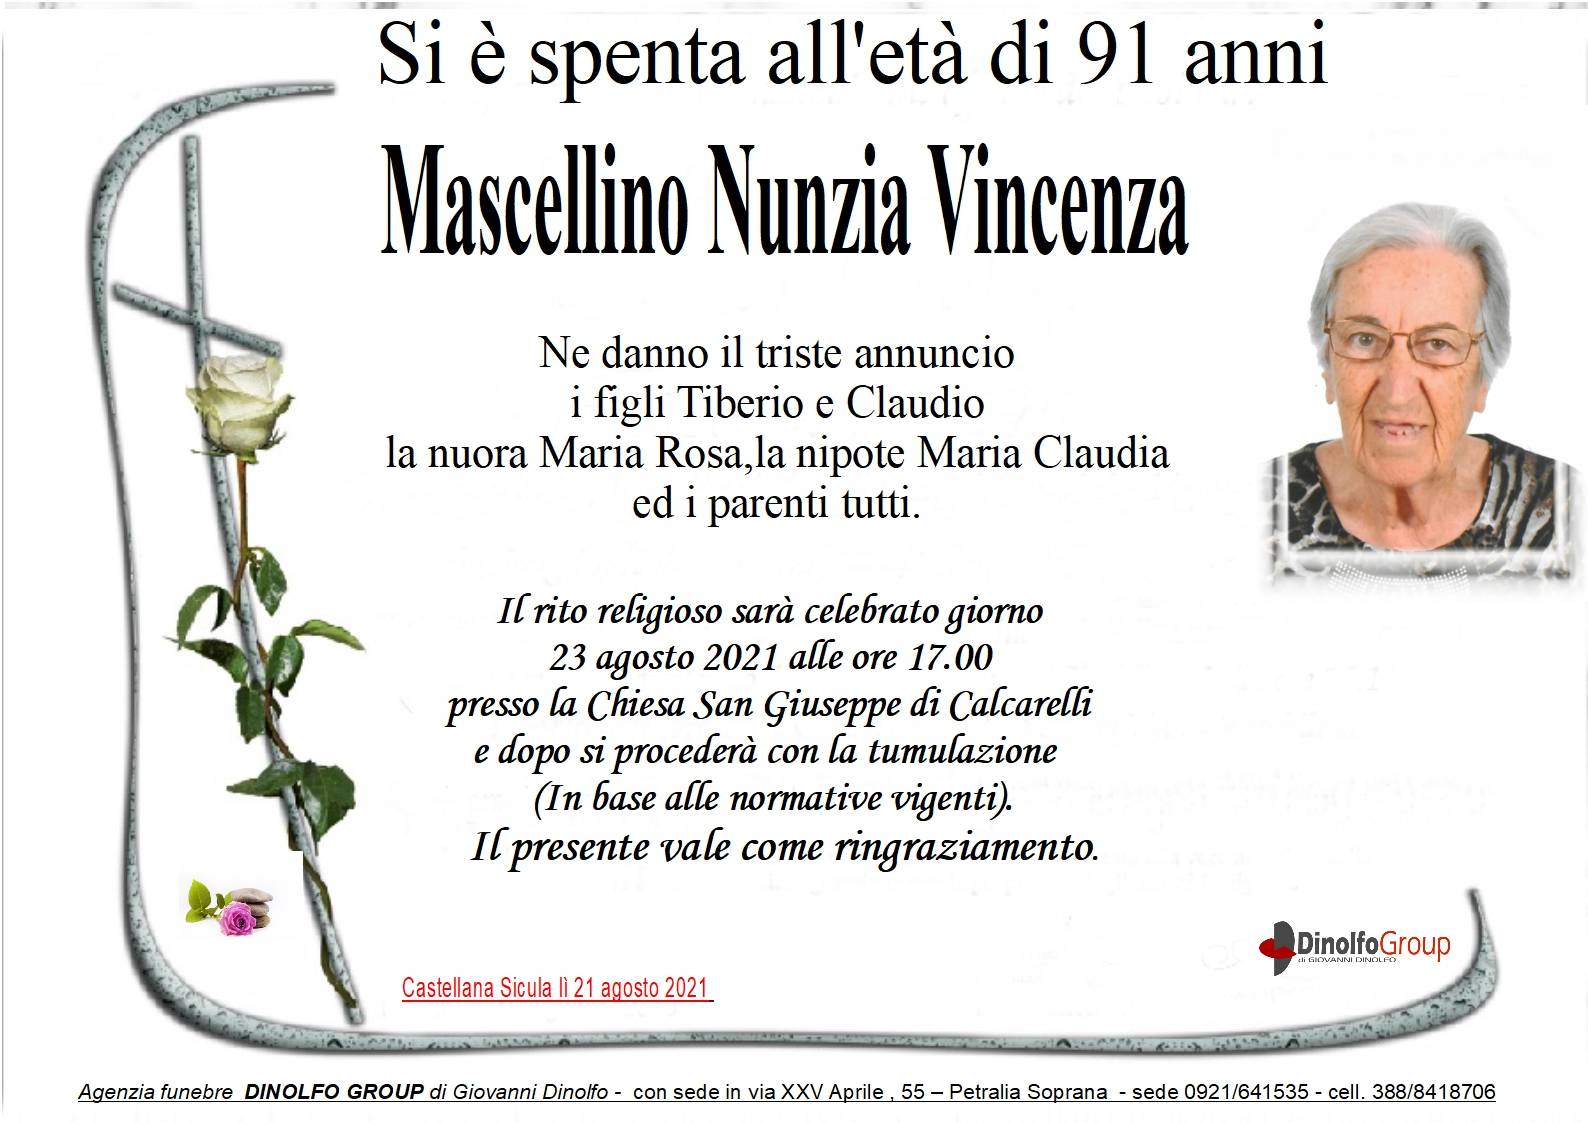 Nunzia Vincenza Mascellino